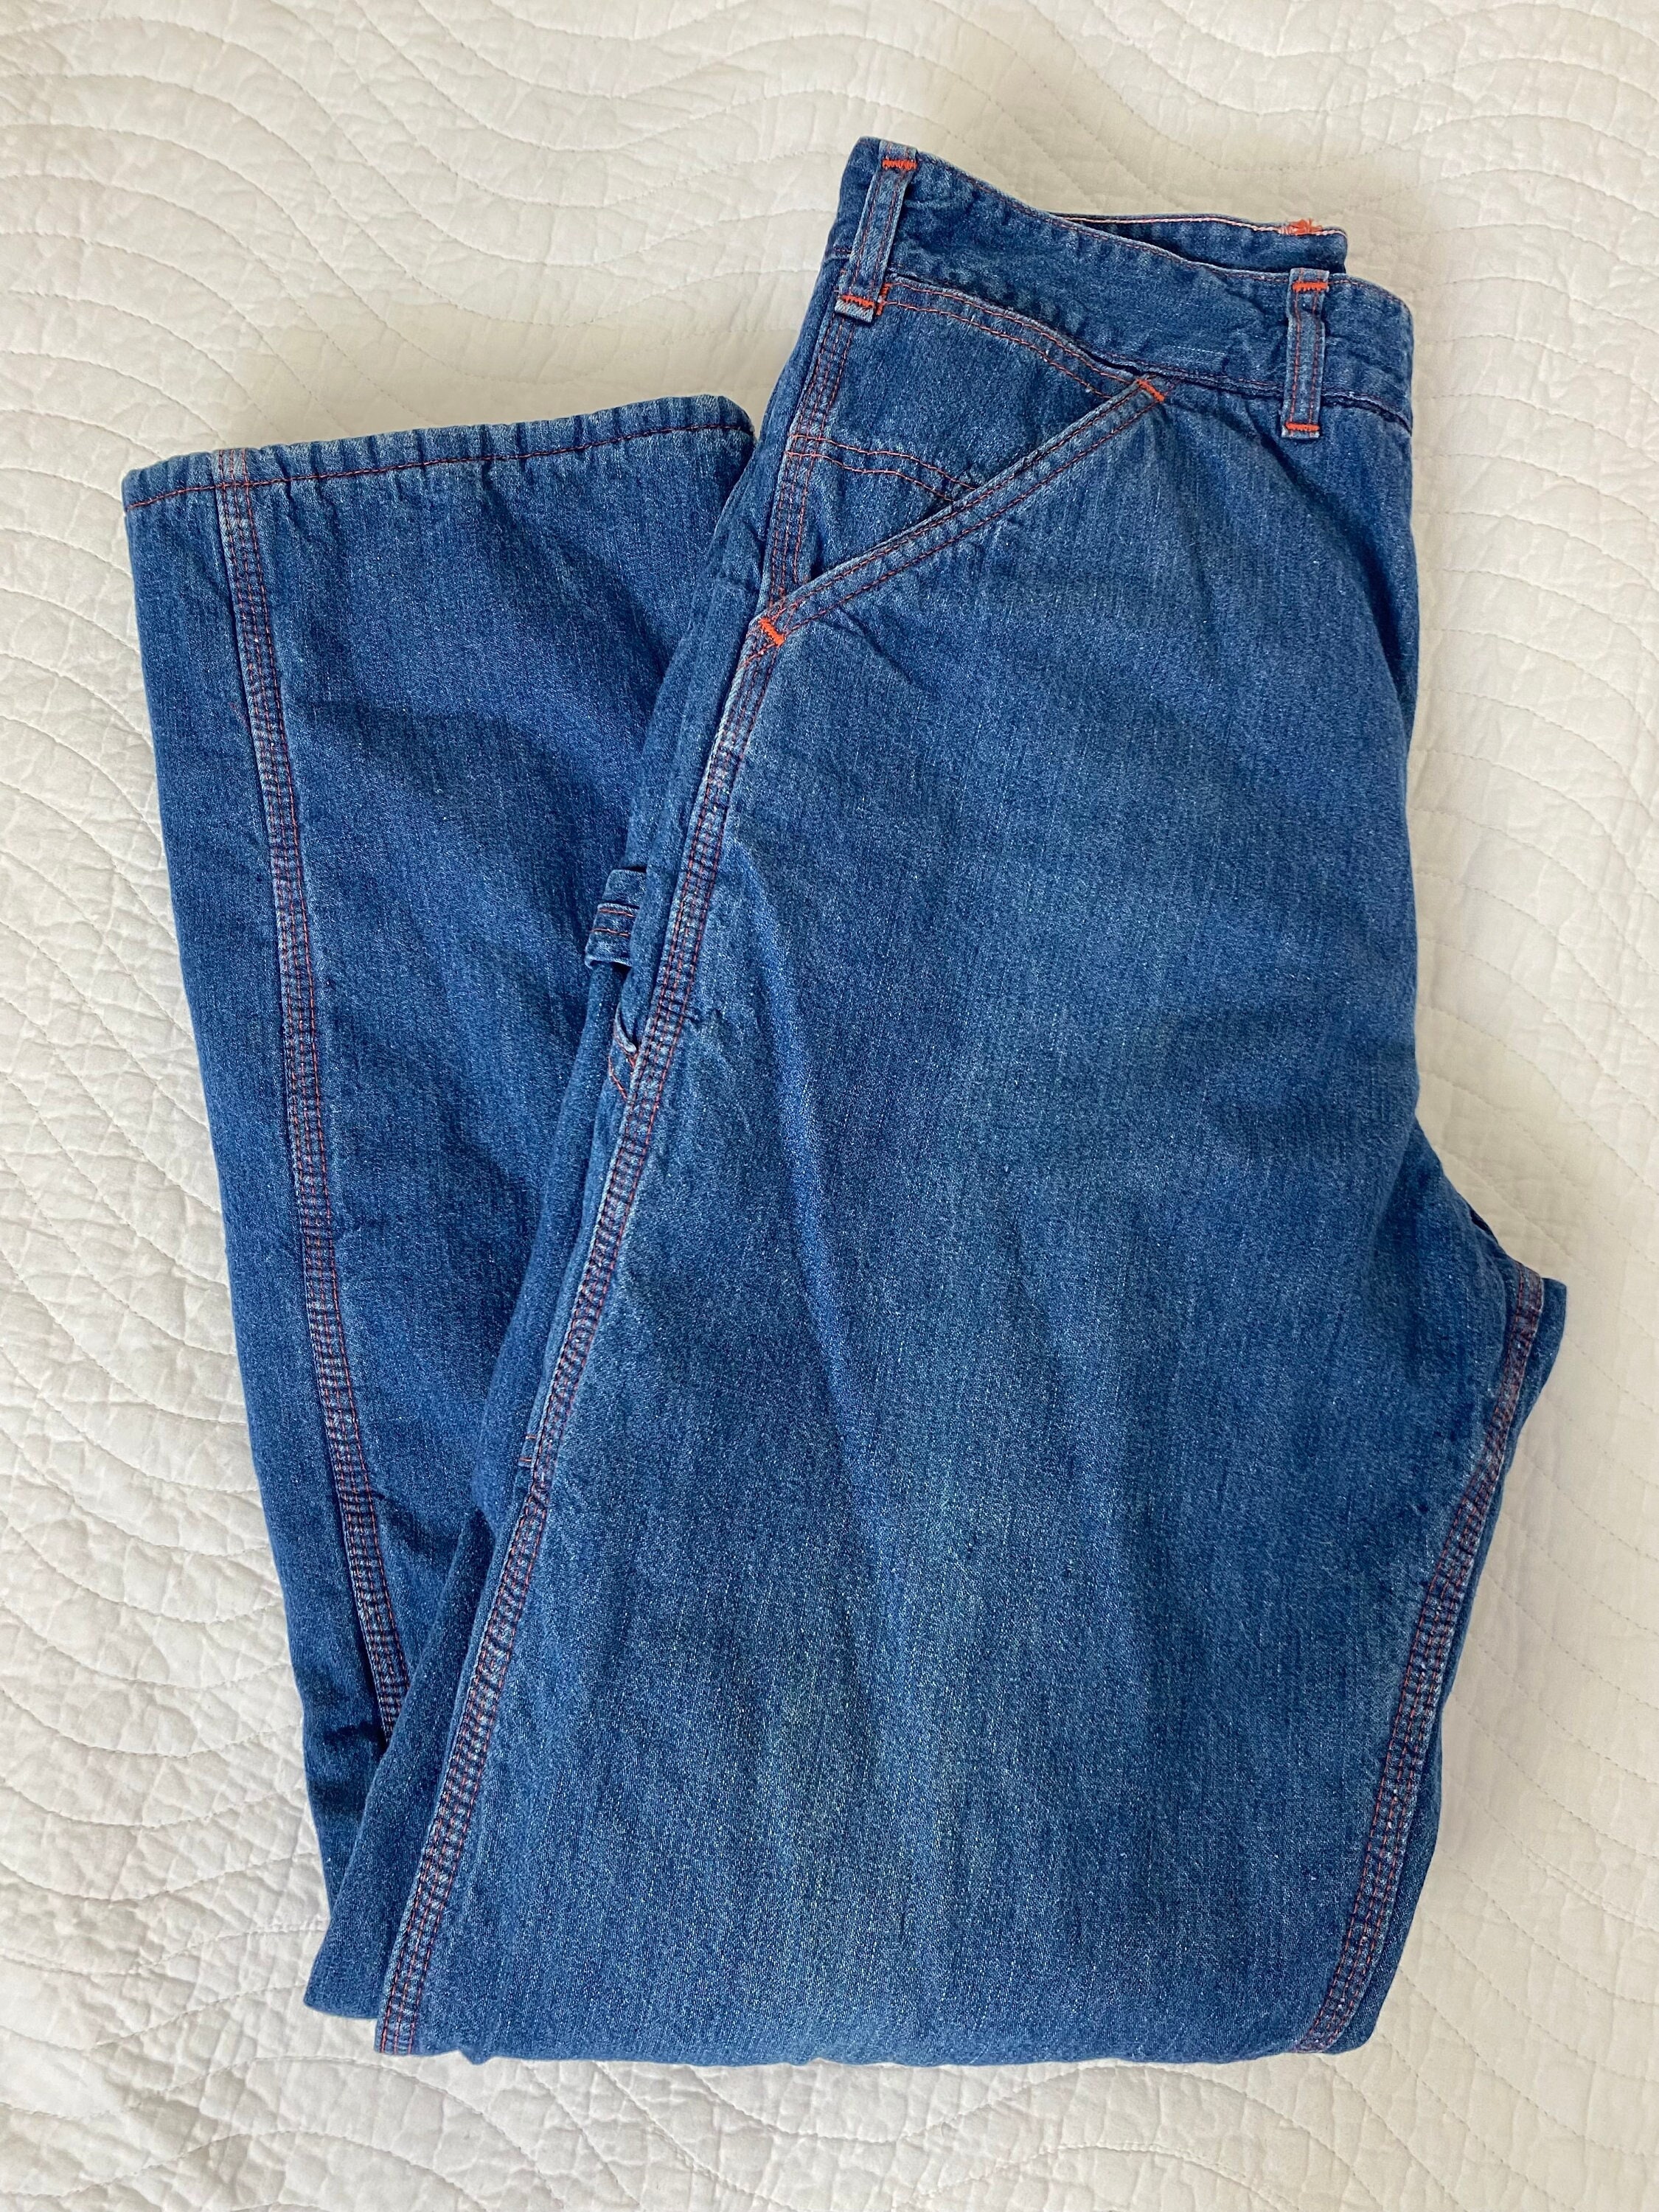 Jeans carpenter estilo utilitario - Hombre - Ready to Wear